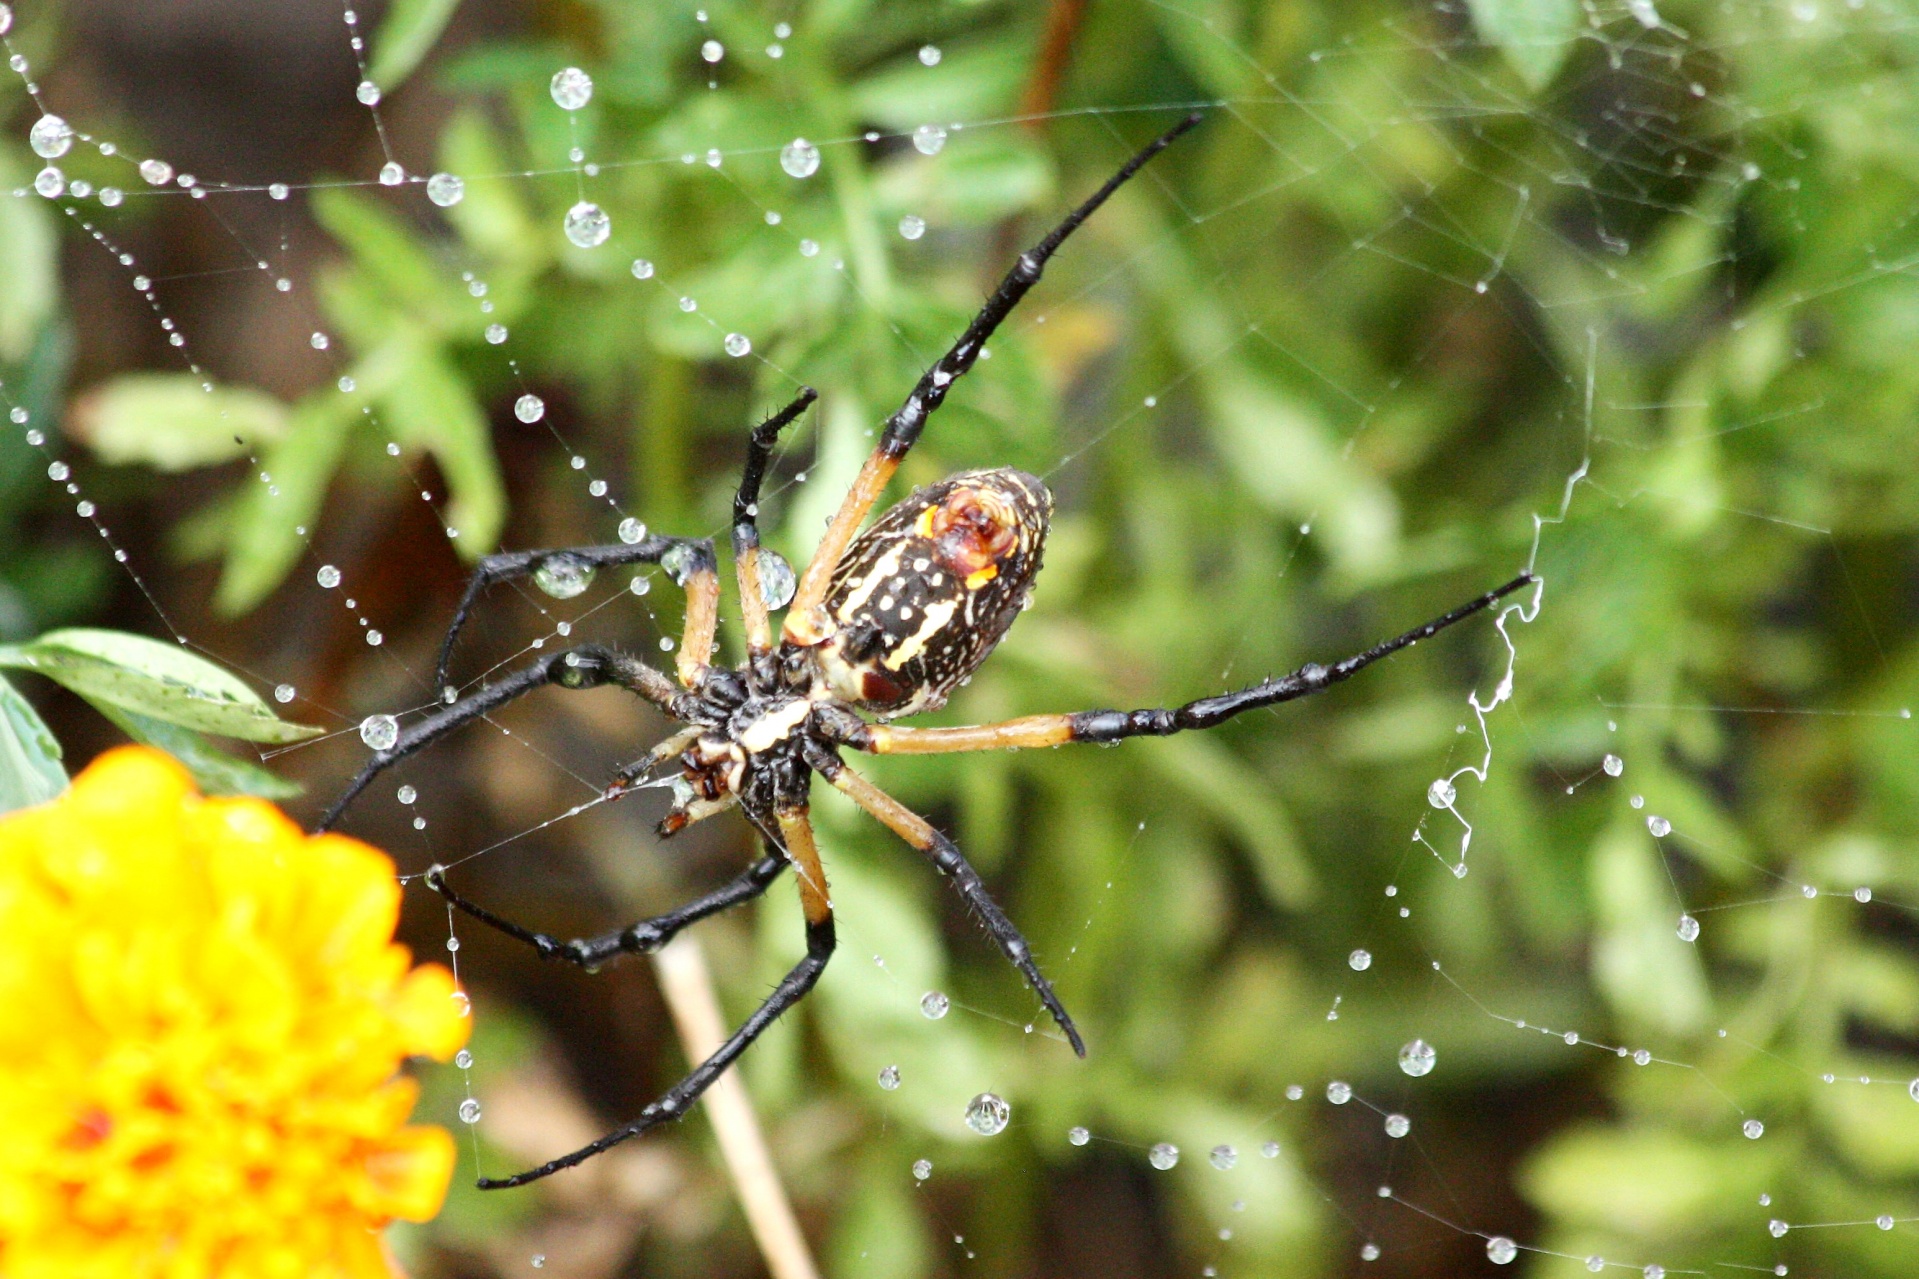 Argiope Spider Spinning Web